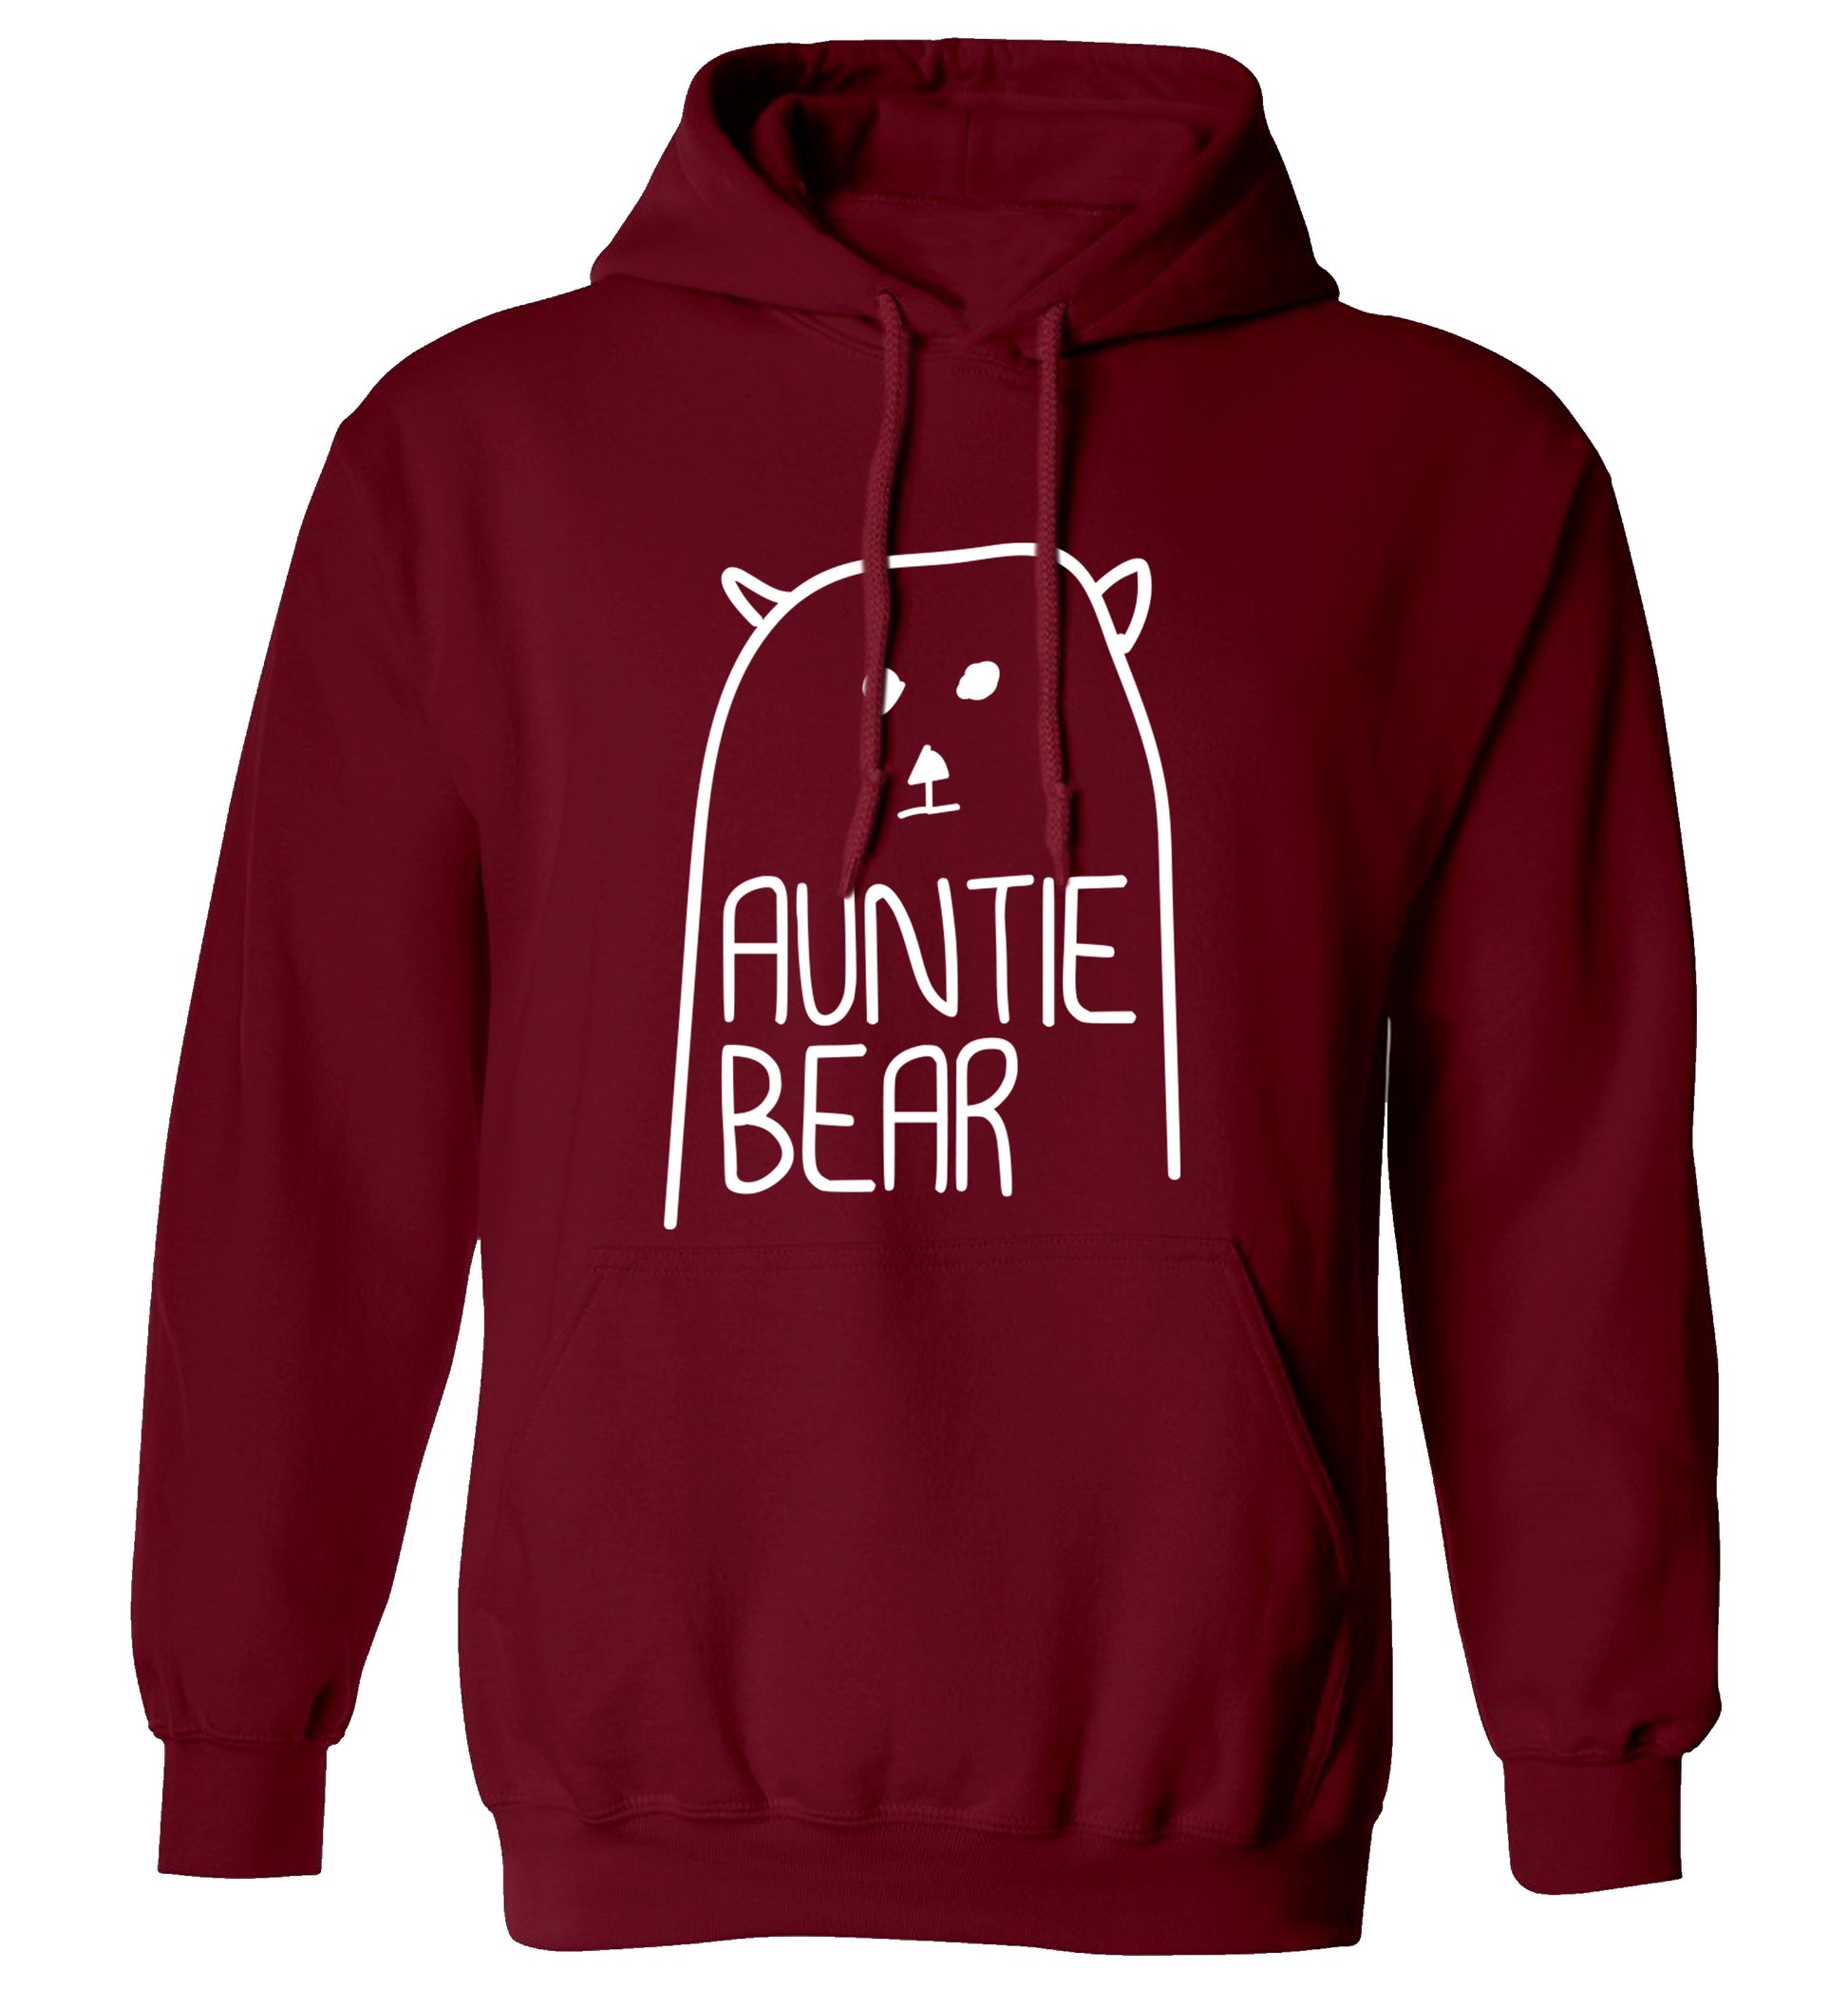 Auntie bear adults unisex maroon hoodie 2XL